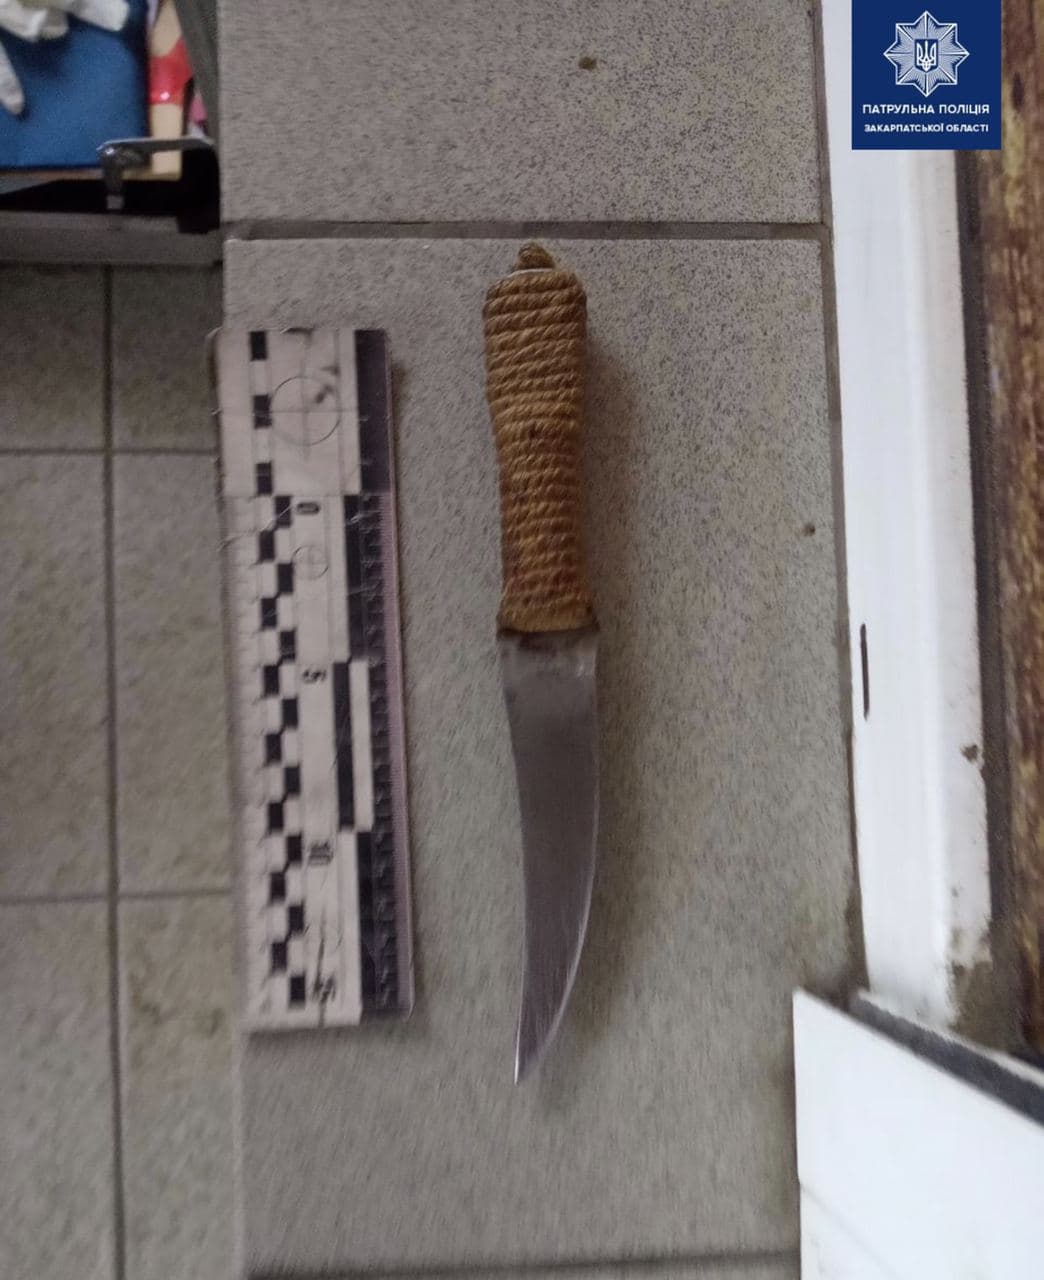 В Ужгороді затримали неадекватного чоловіка, що погрожував перехожим ножем (ФОТО)